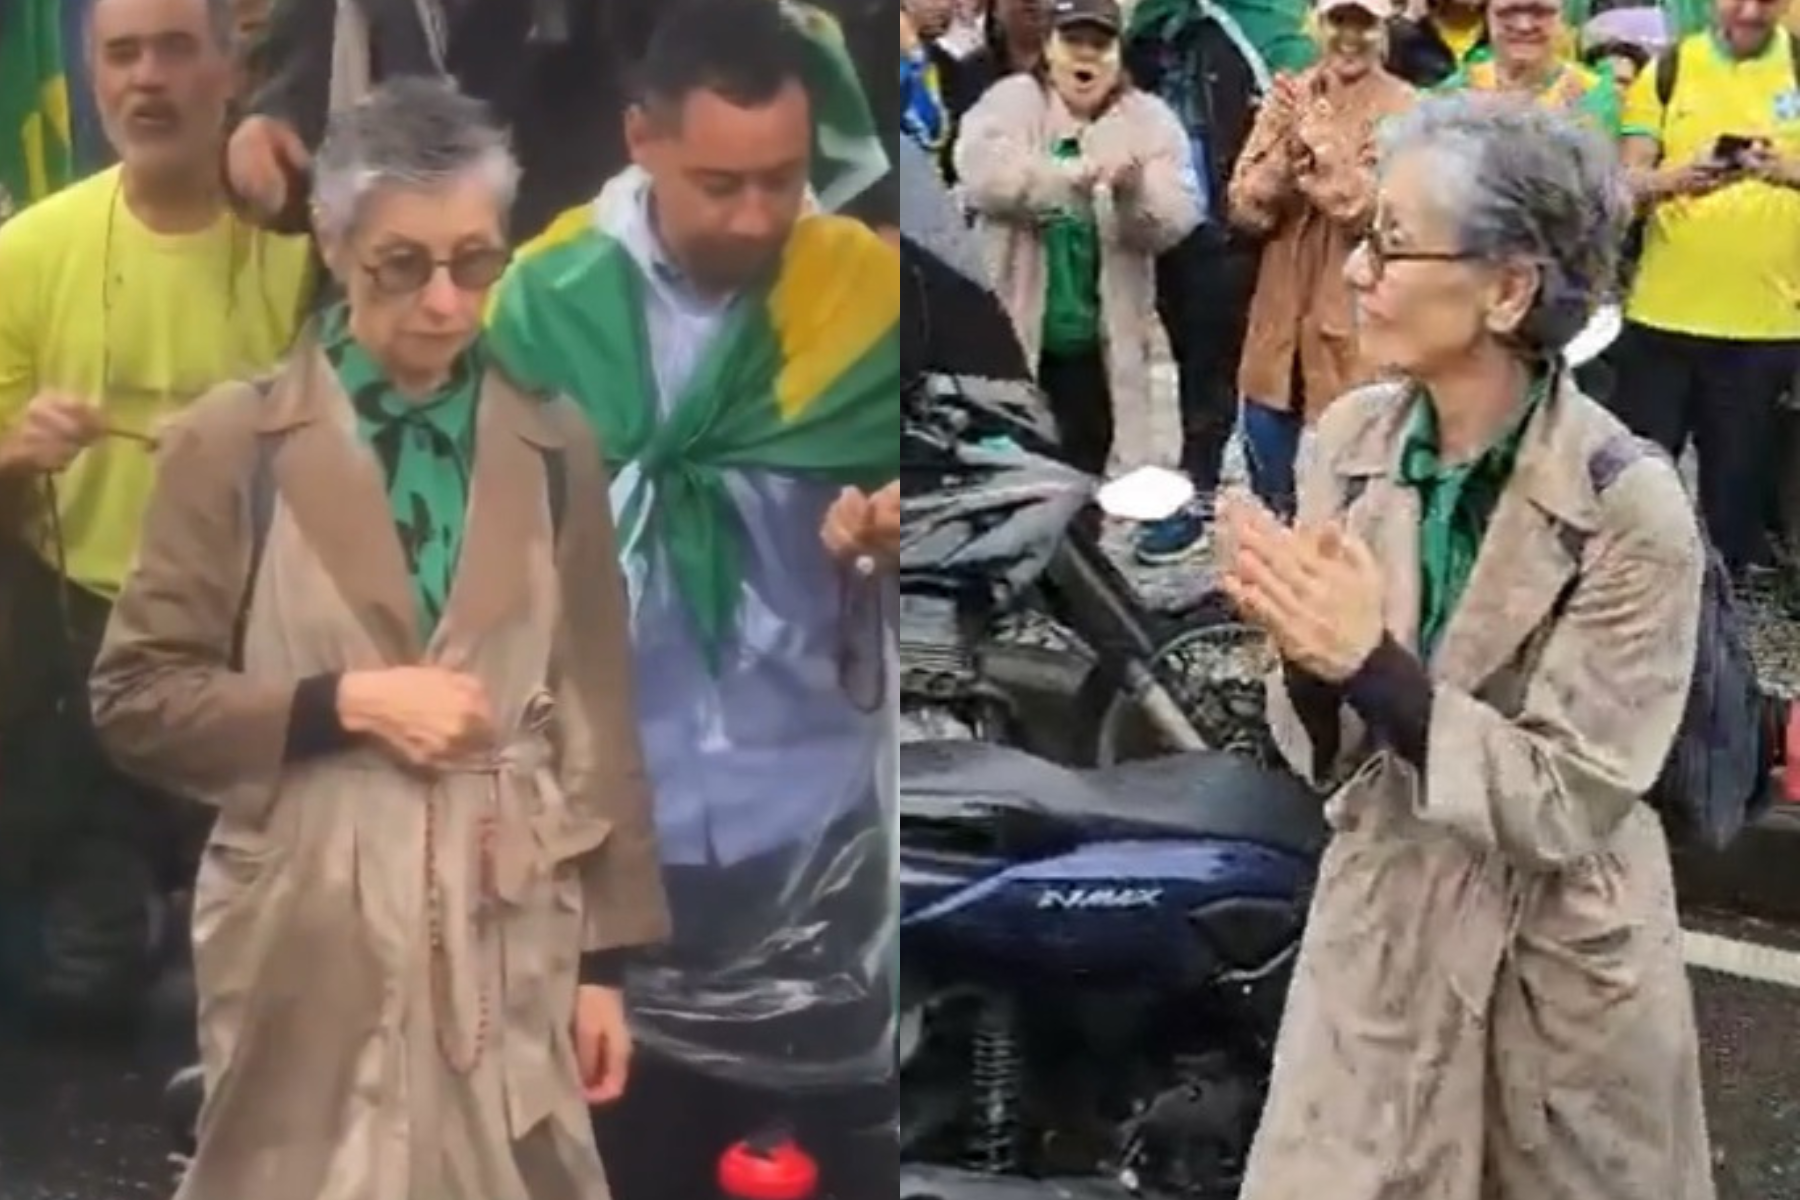 Atriz, que também recebeu aplausos, ajoelhou e rezou um terço junto com os apoiadores do presidente Jair Bolsonaro, no Centro do Rio